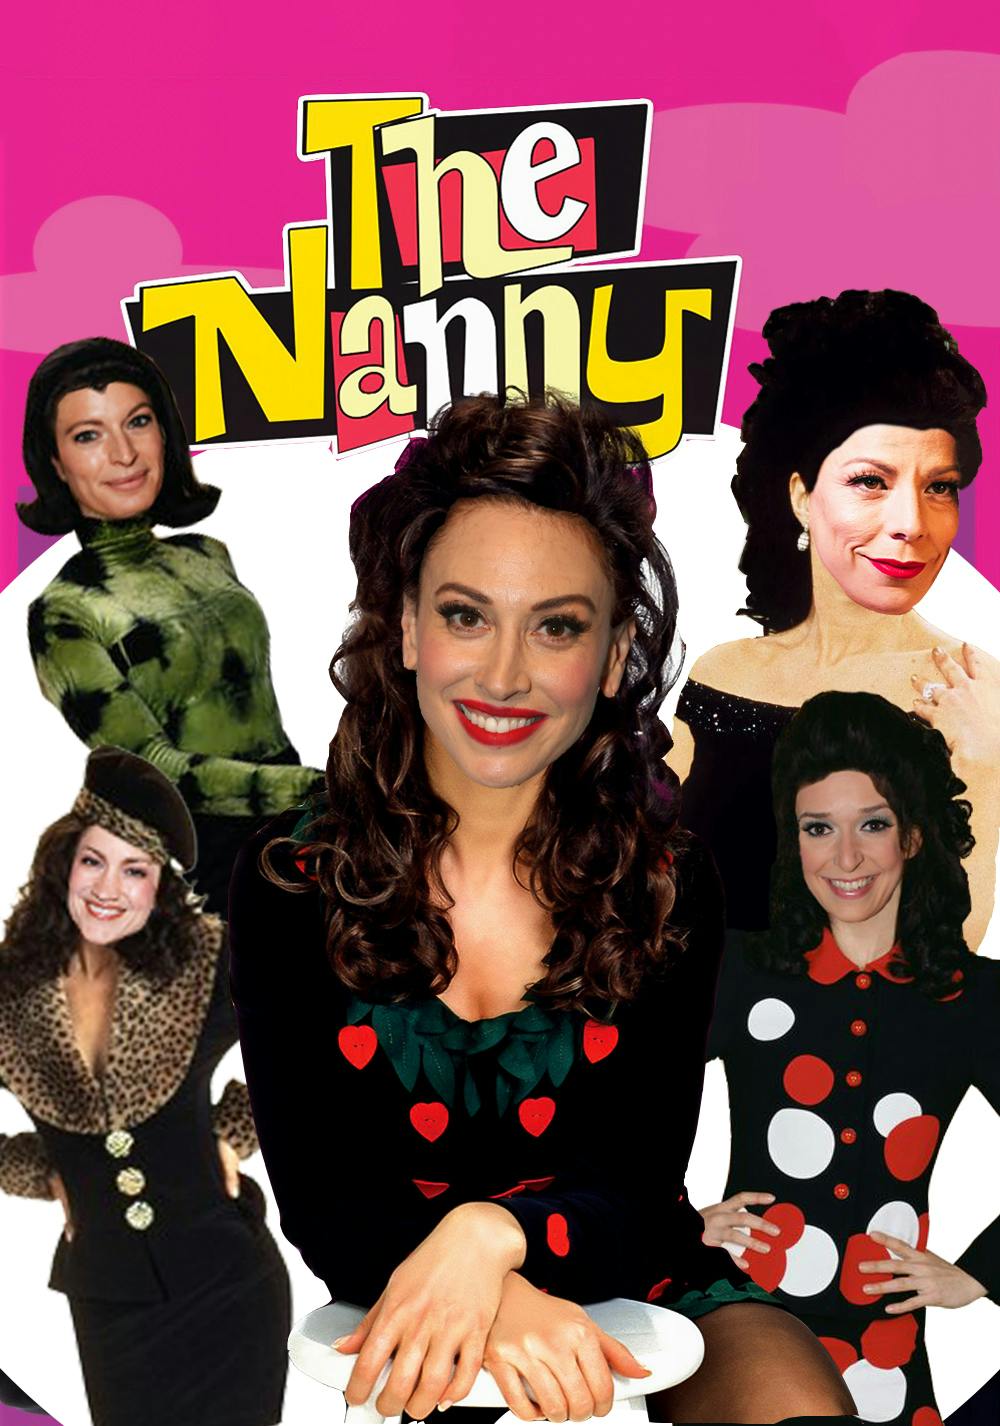 Nanny dream cast graphic